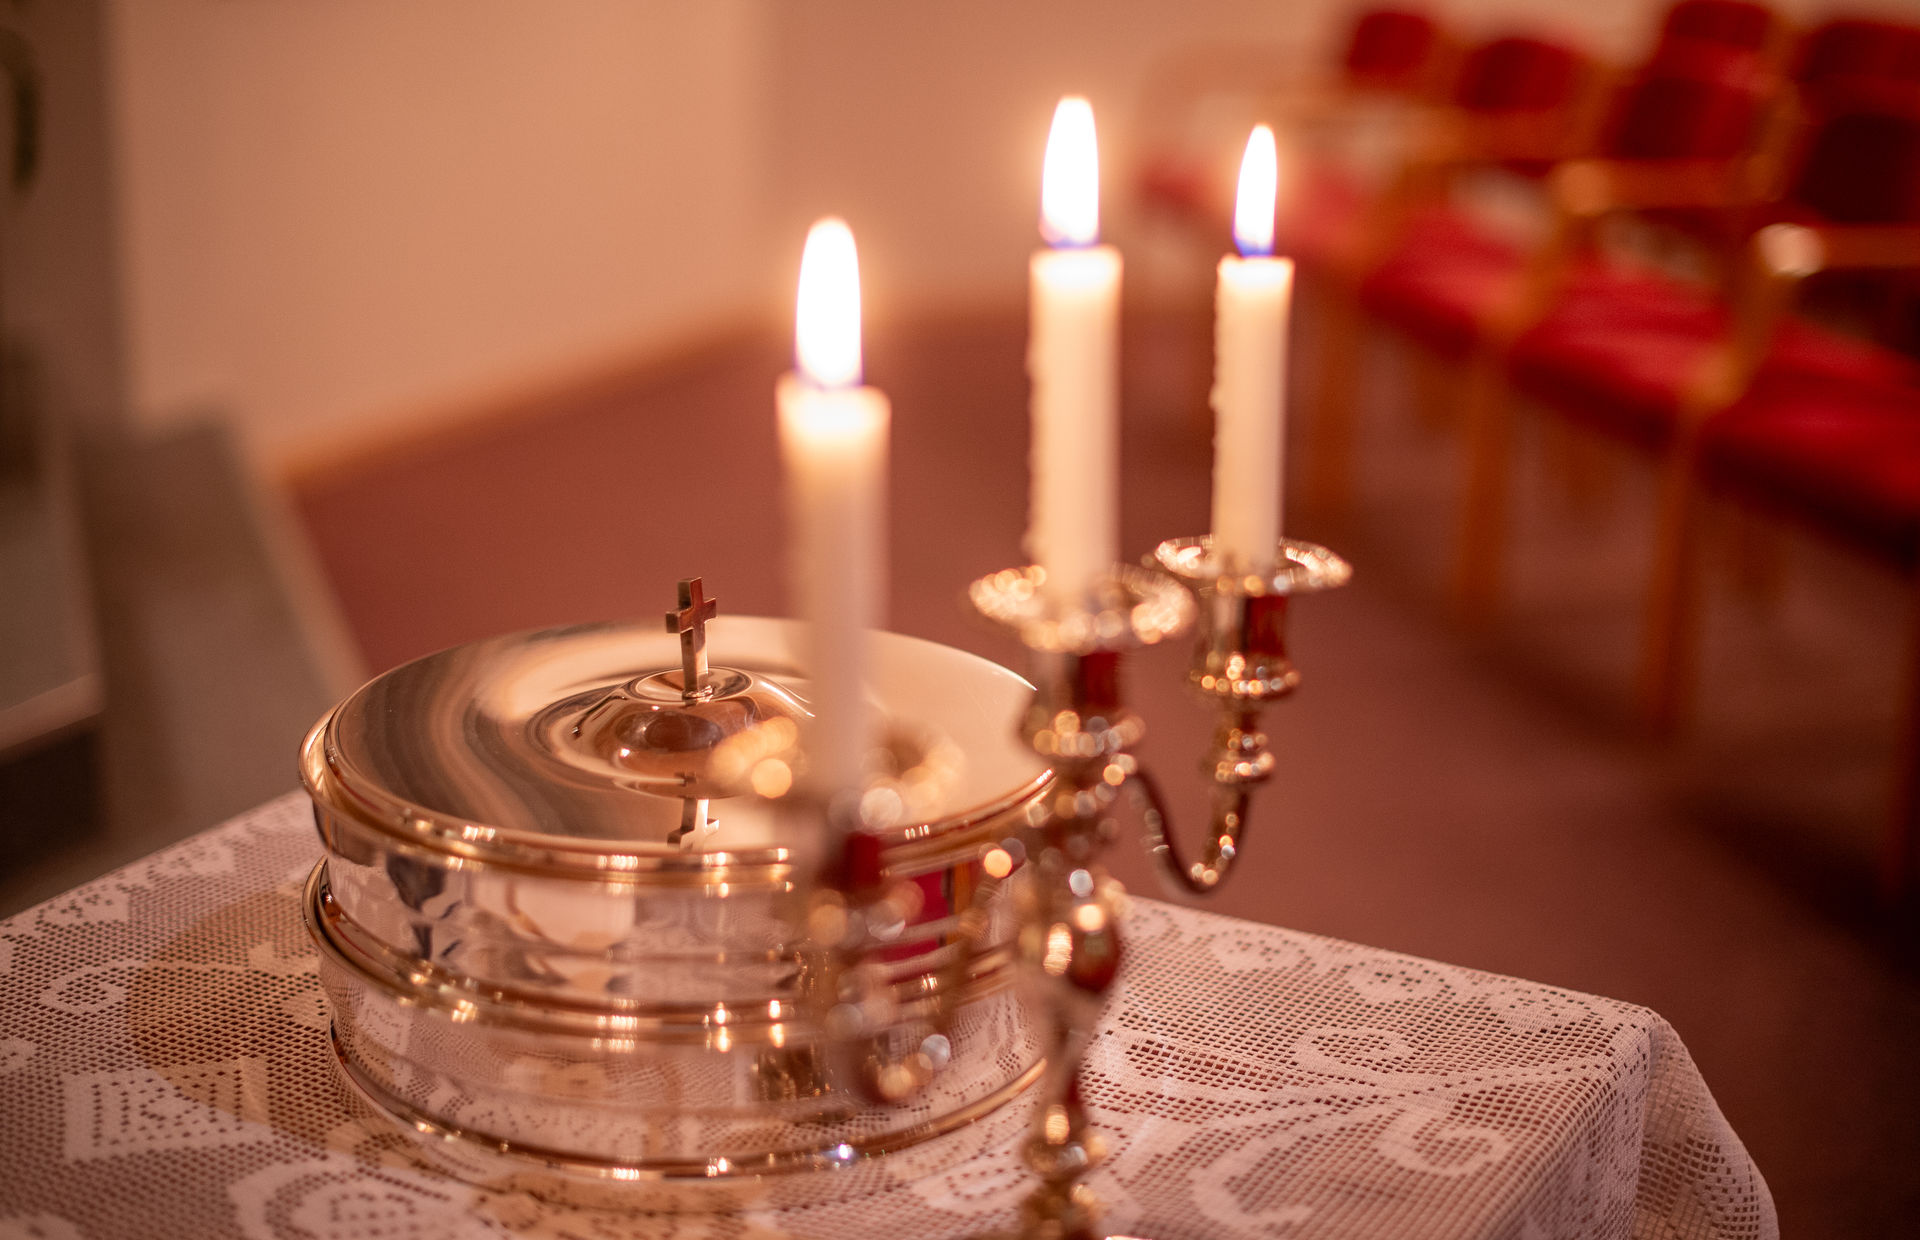 Nattverdsmøte Skjærtorsdag er en tradisjonsrik del av påskehøytiden i mange kristne fellesskap.